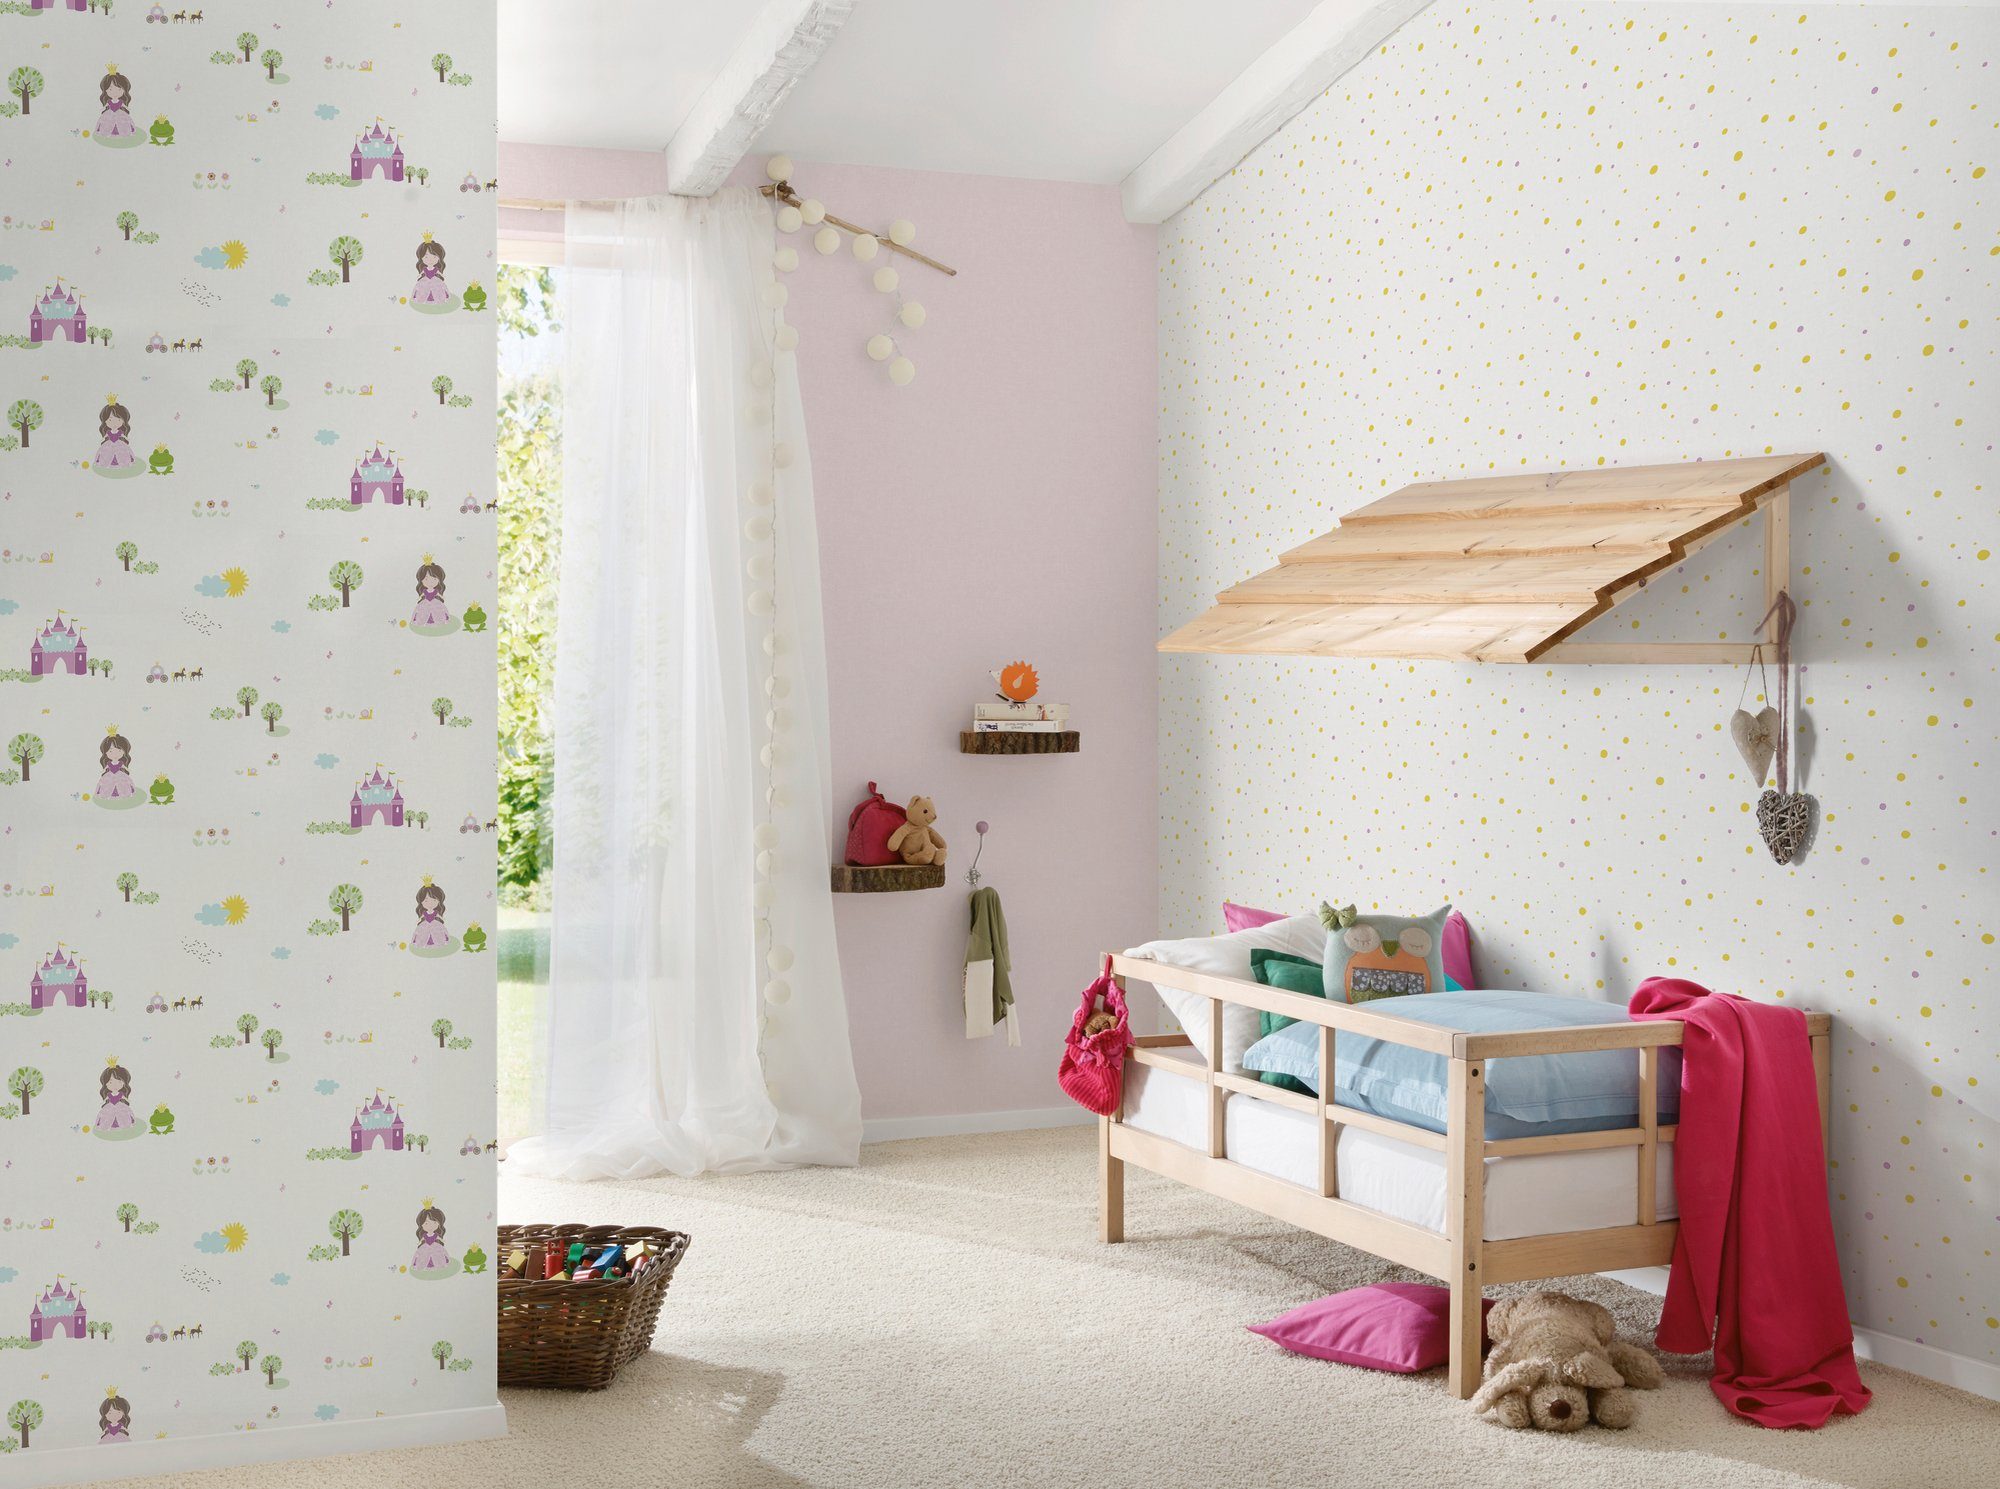 A.S. Création living walls weiß/braun/rosa Tapete Kinderzimmer Vliestapete gepunktet, Stars, Little glatt, Metallic Punkte